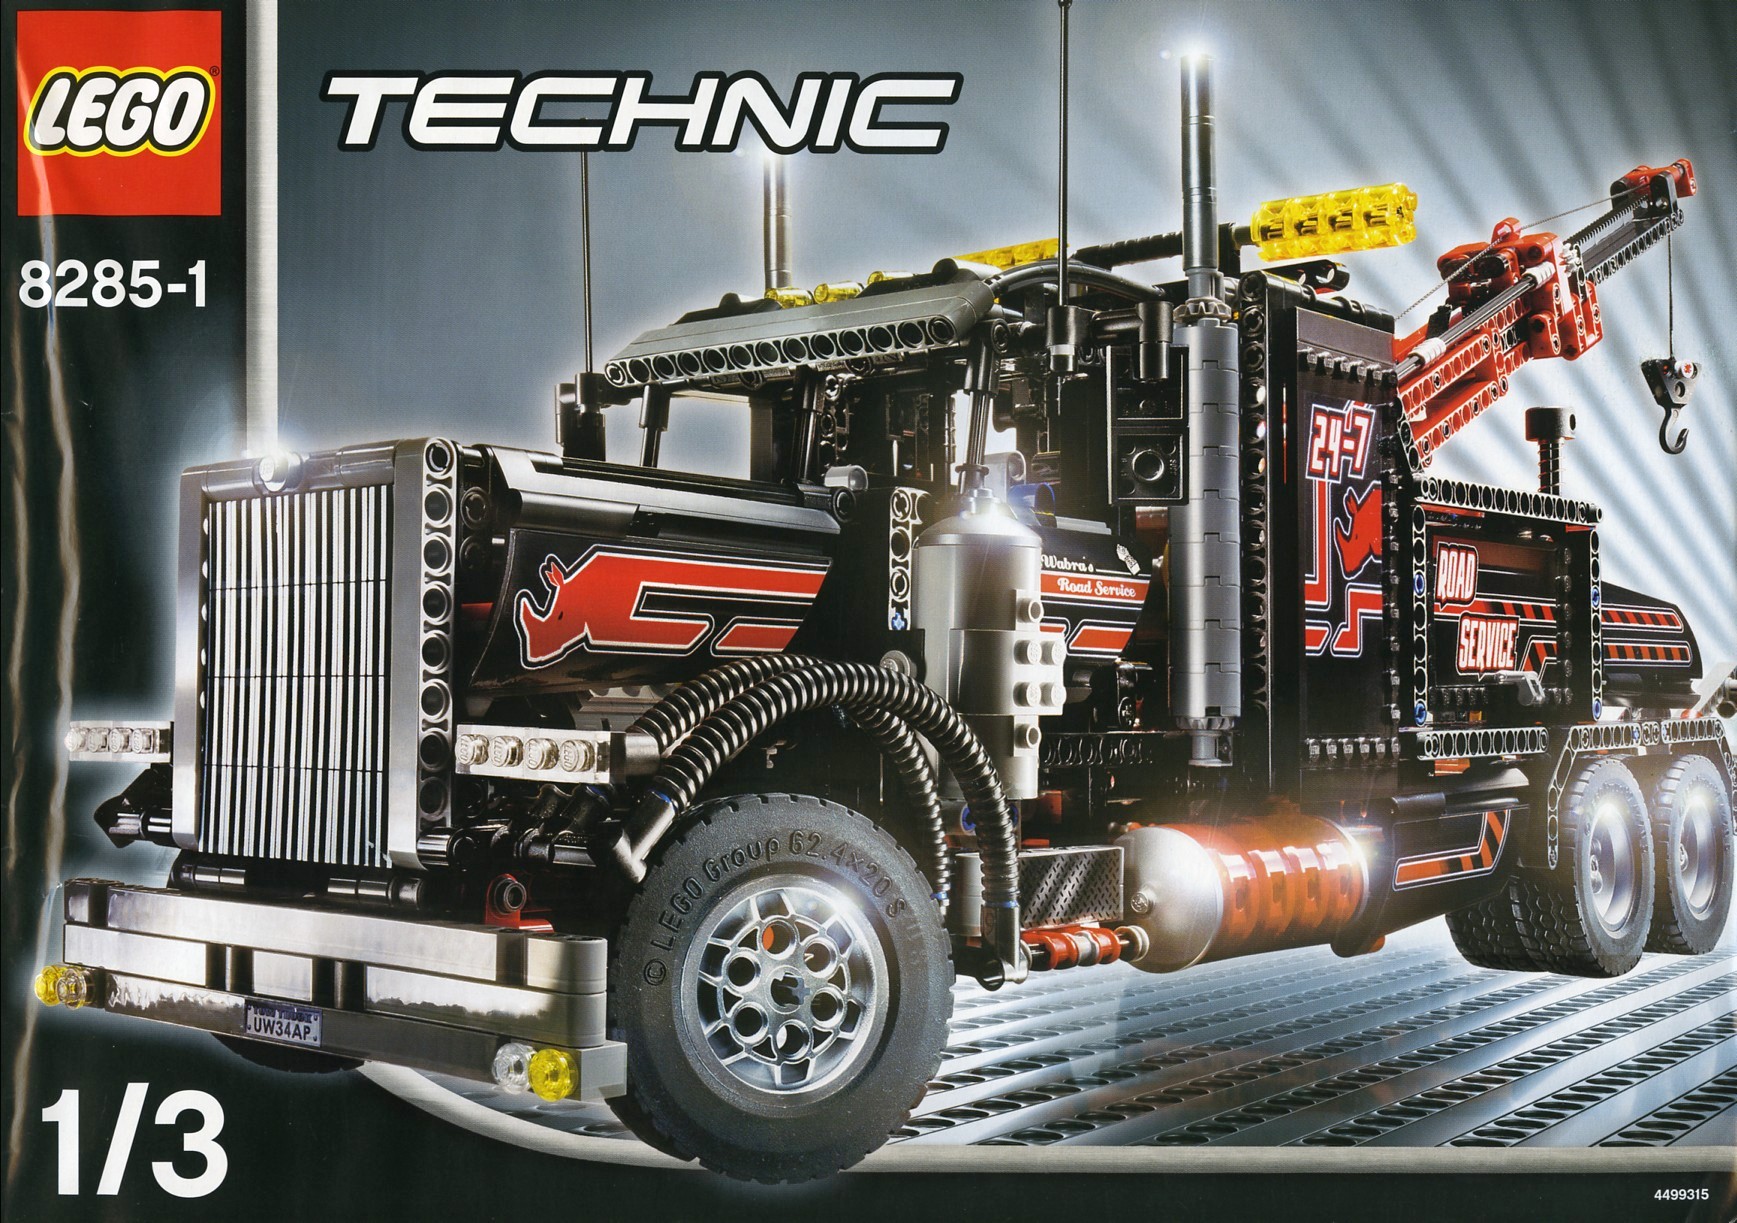 LEGO Technic 42167 pas cher, Mack LR Electric Camion poubelle